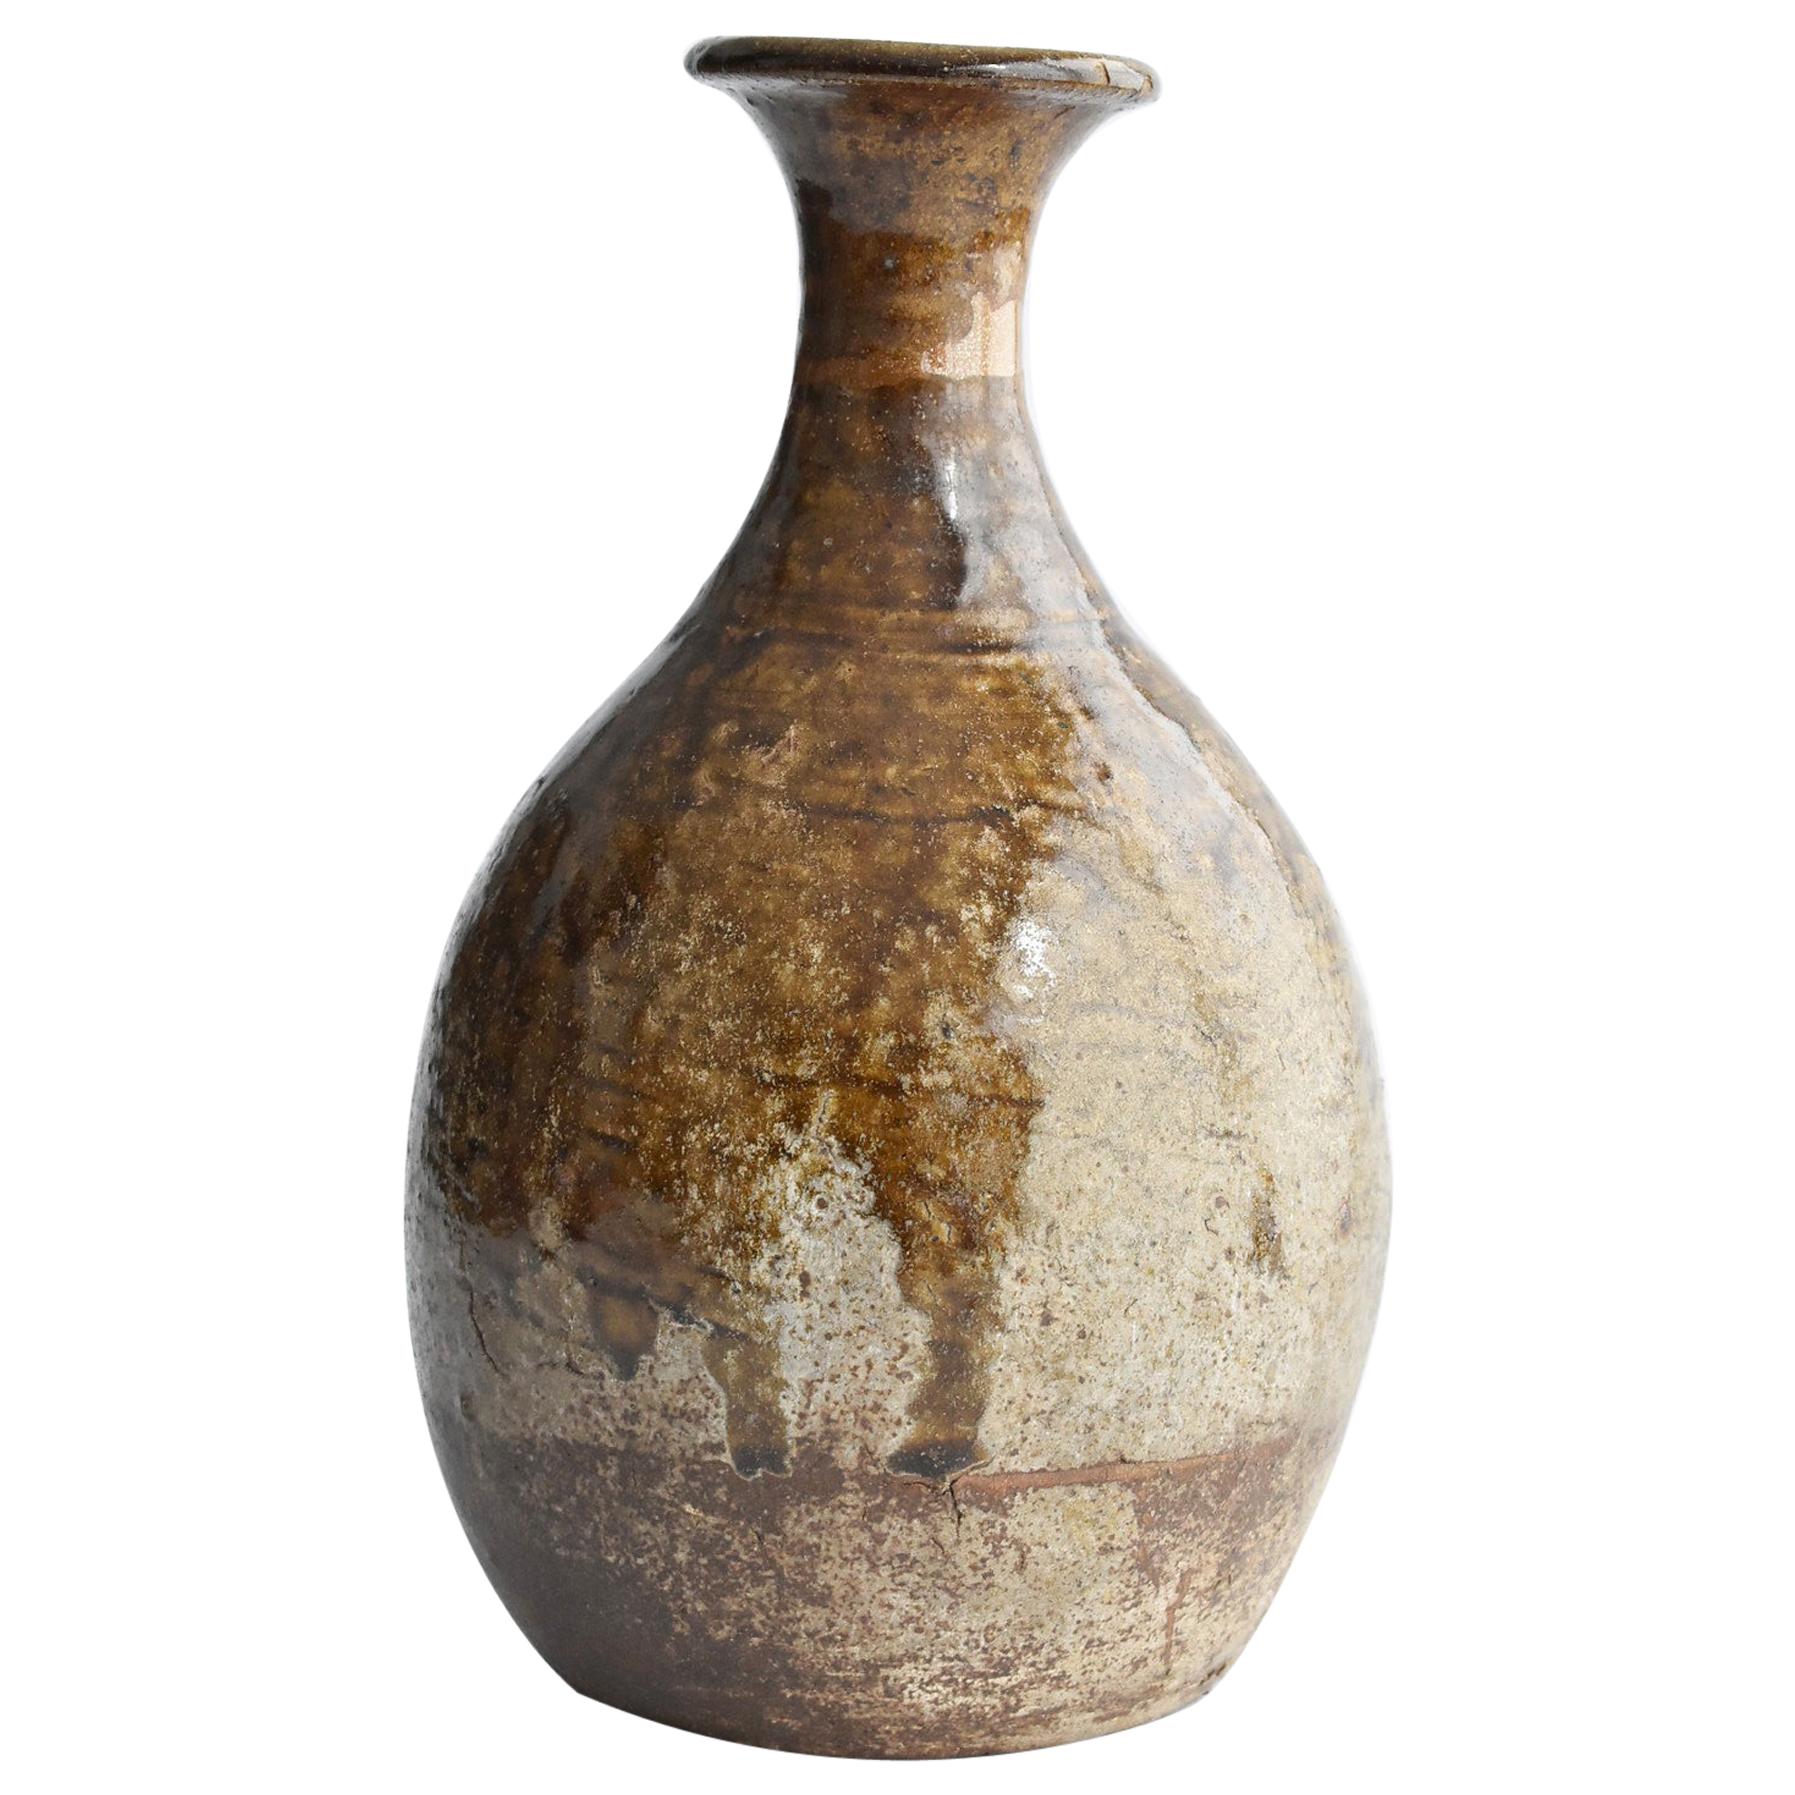 Edo Period '1600s' Japanese Sake Bottle "Karatsu Ware" / Antique Kintsugi Vase